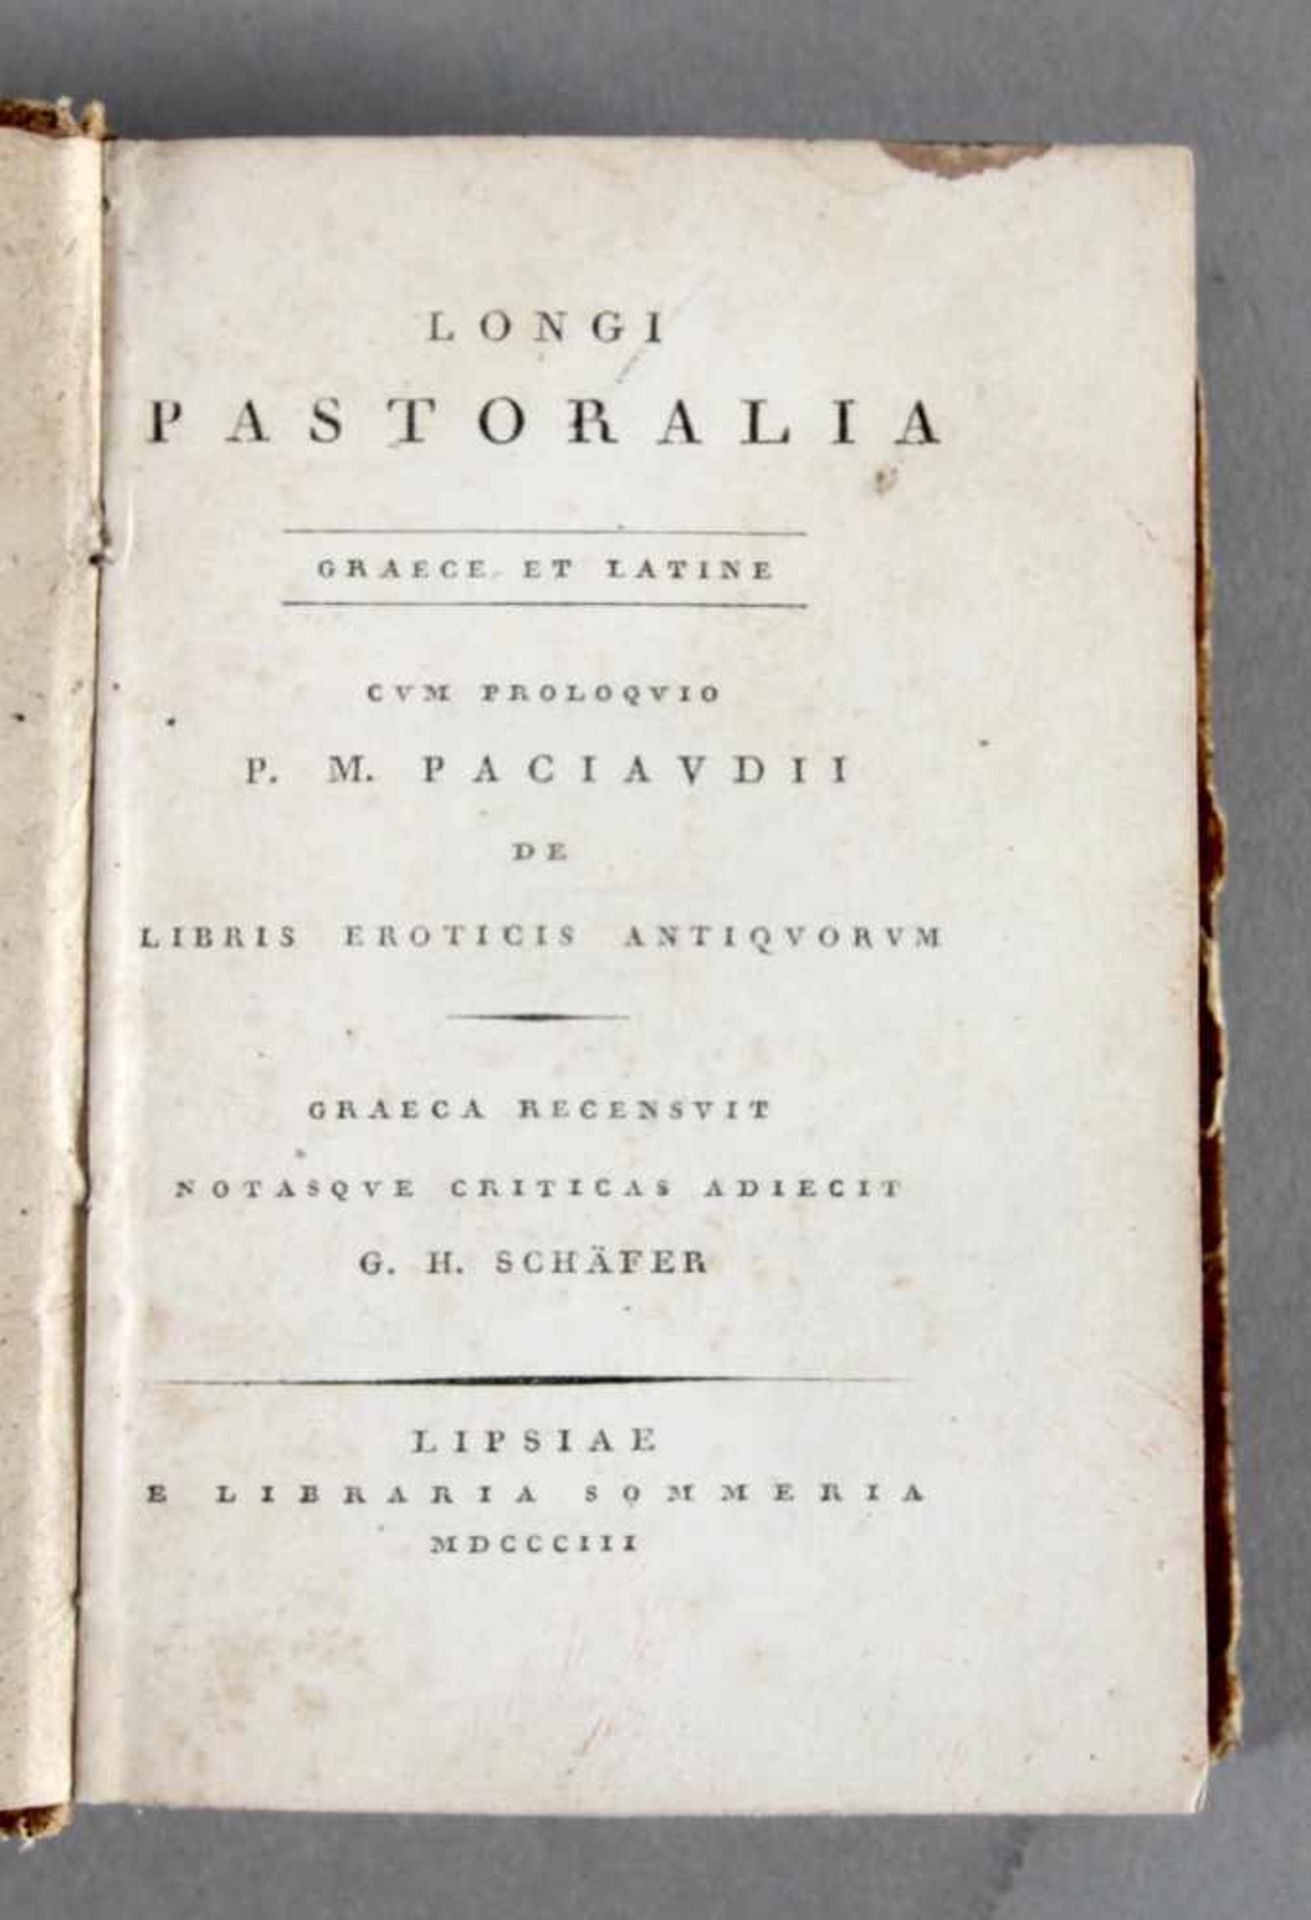 "Longi Pastoralia, graece et latine, cum Proloquio P.M. Paciaudii de Libris Eroticis Antiquorum",